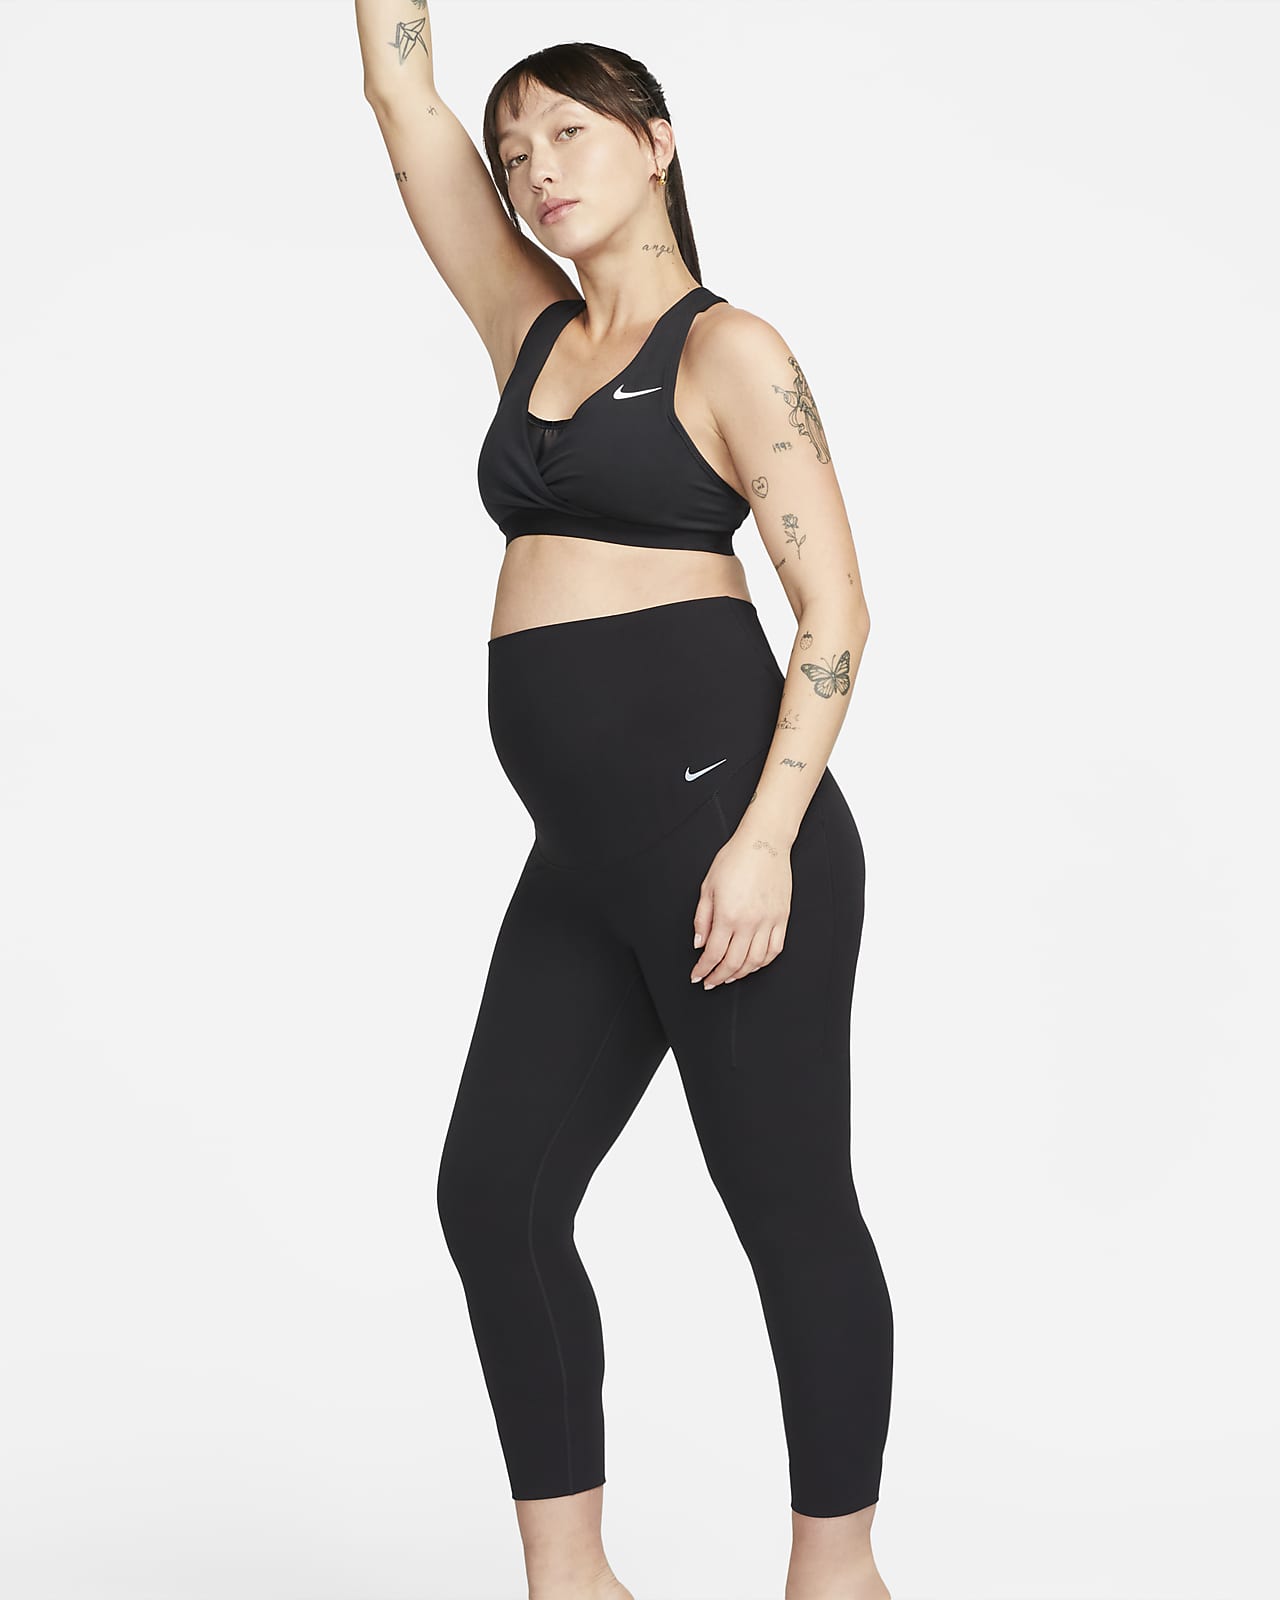 Γυναικείο ψηλόμεσο κολάν 7/8 με ήπια στήριξη και τσέπες Nike Zenvy (M) (μητρότητας)